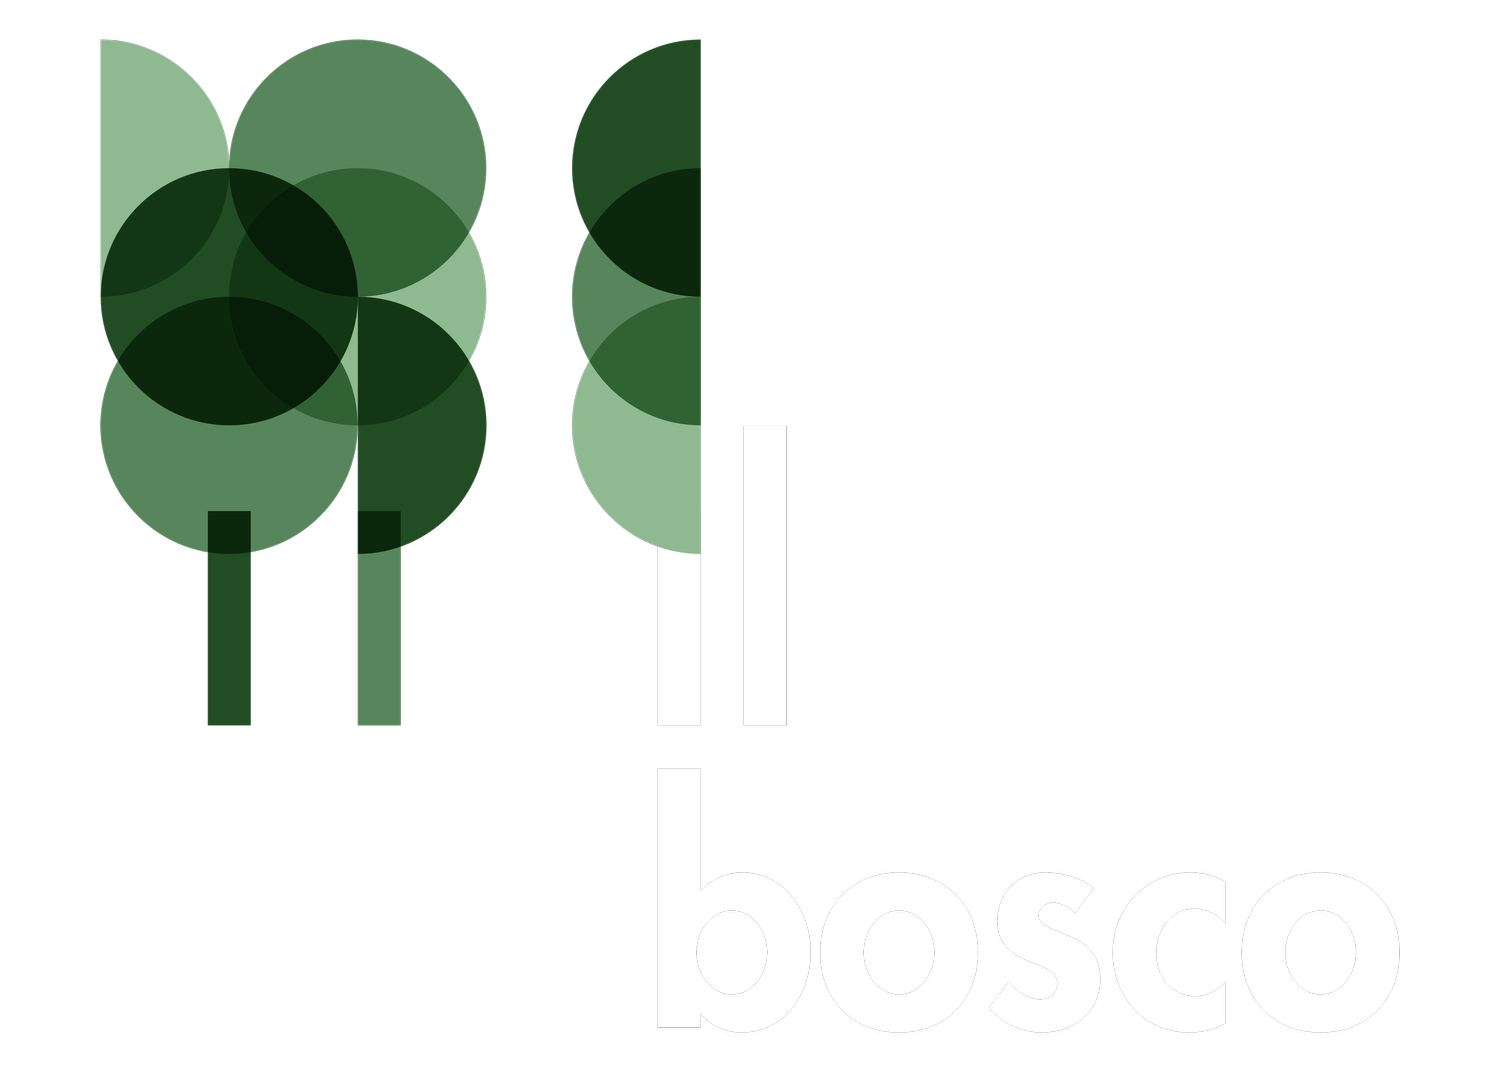 Agritursmo il Bosco